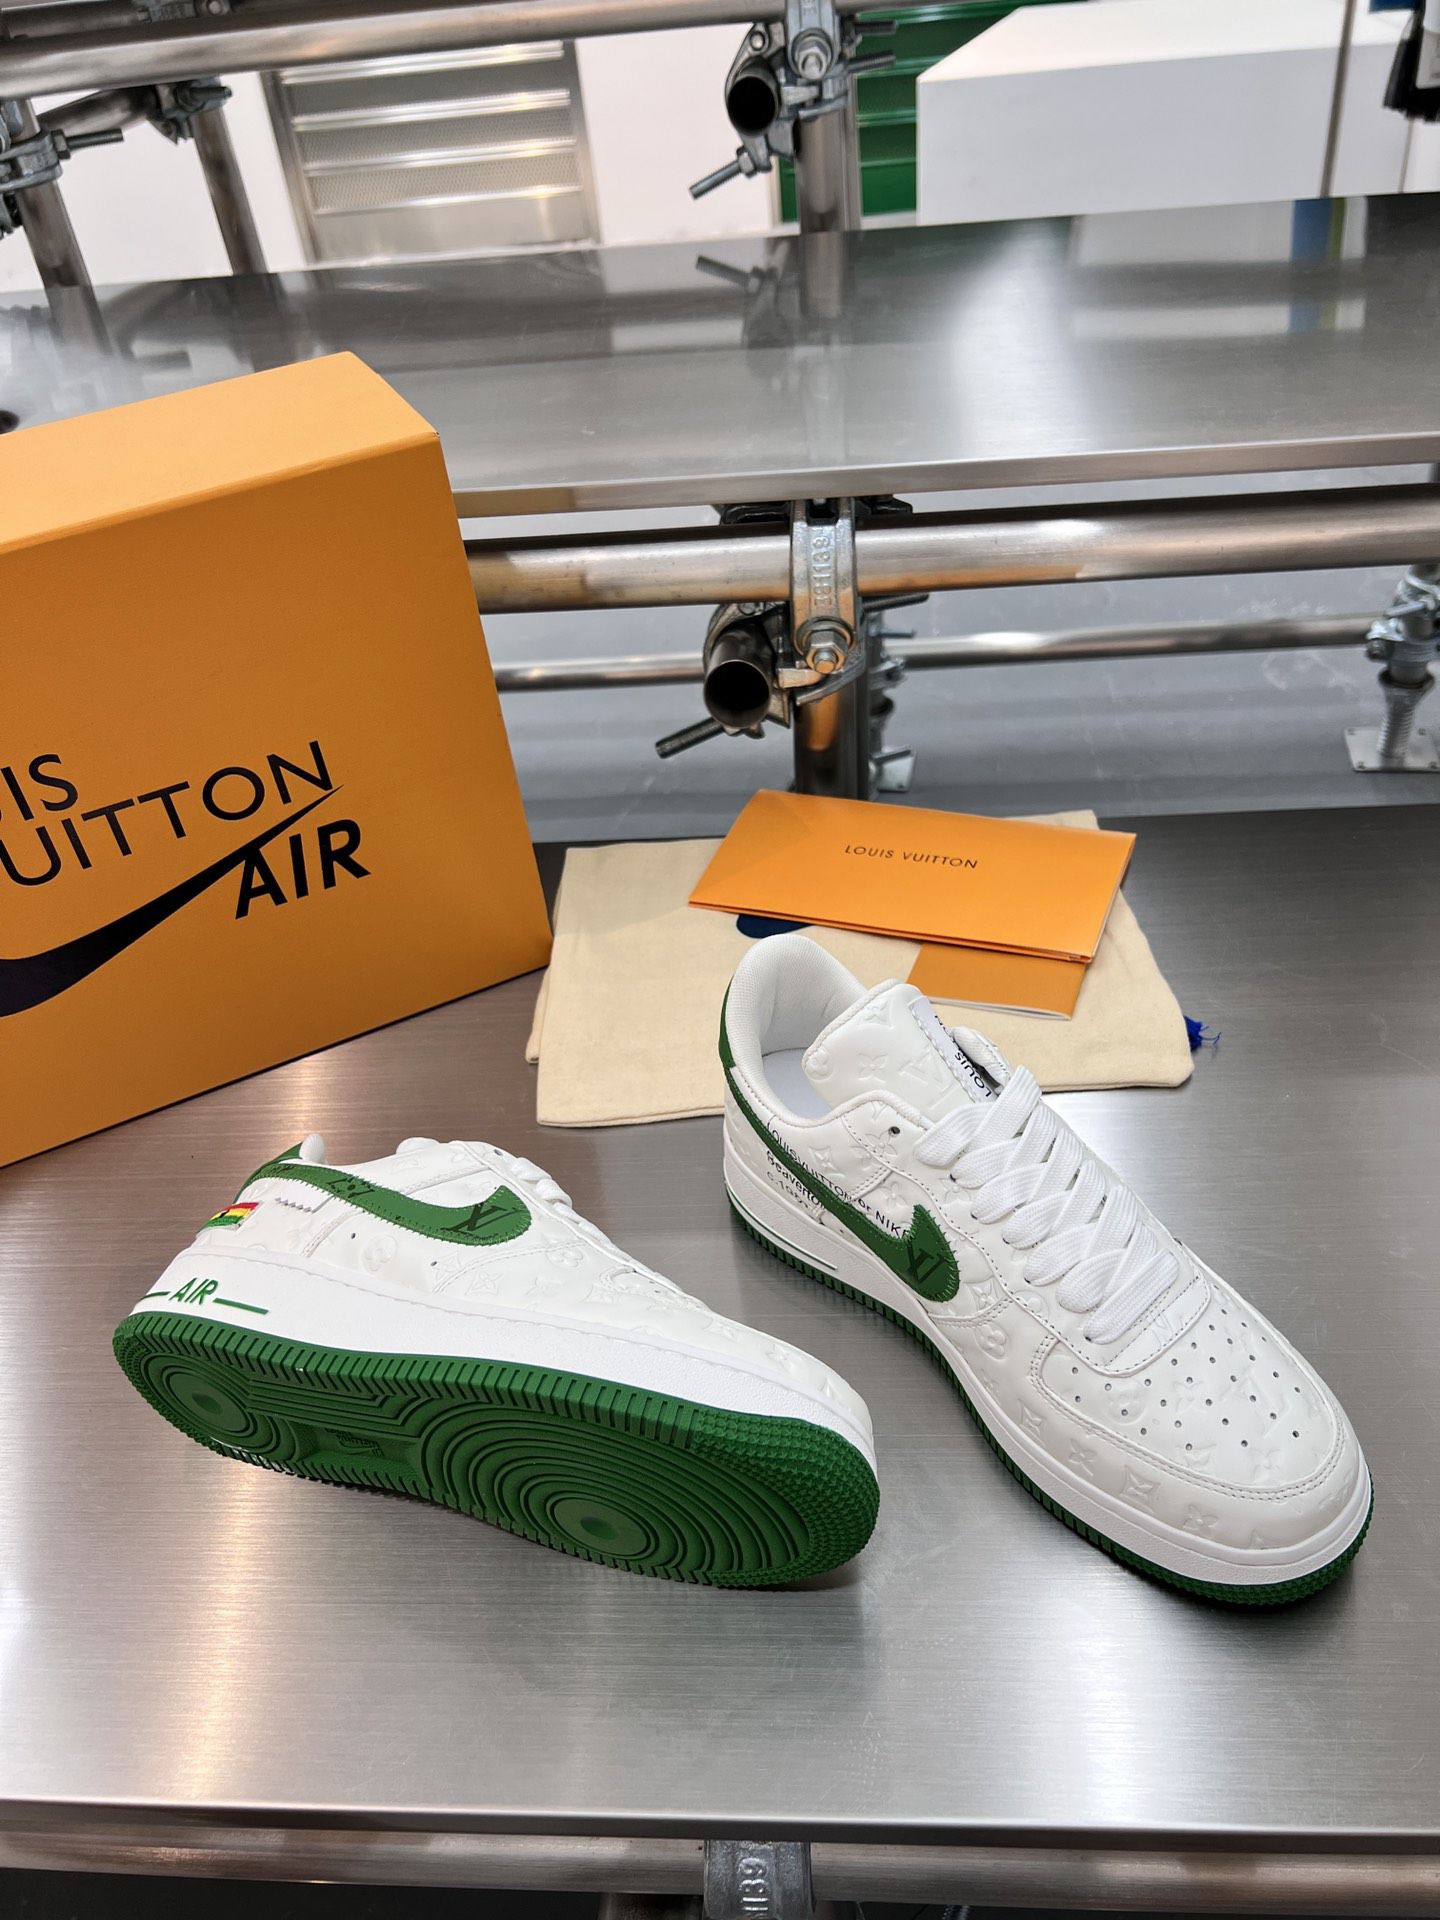 Louis Vuitton Nike Air Force 1 146